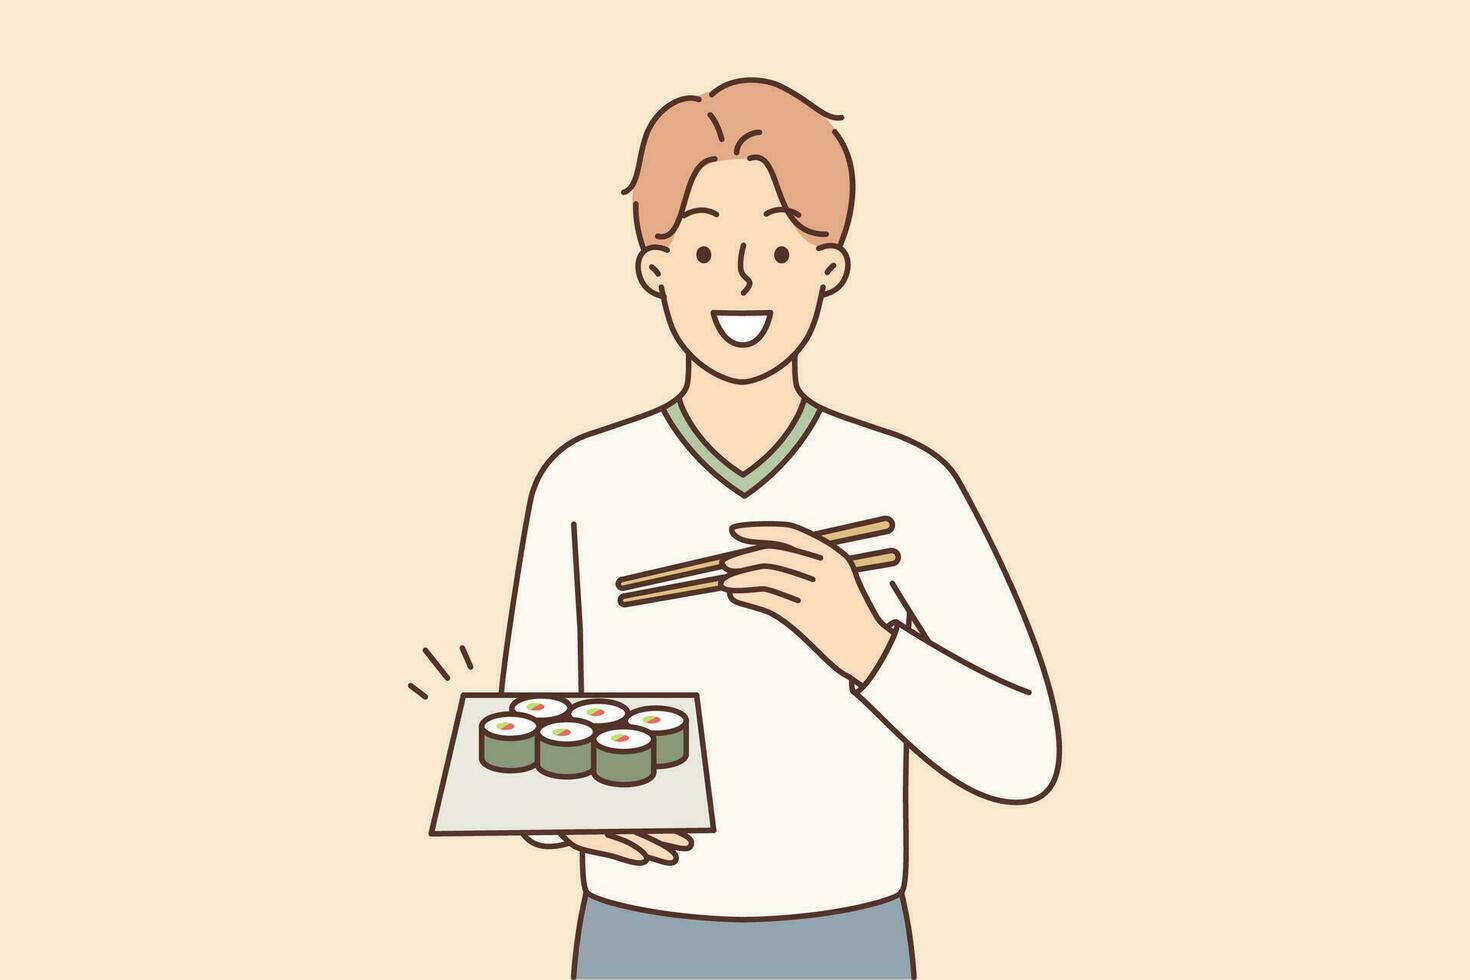 Mens Holding bord van maki broodjes nodigt uit naar dineren in Japans restaurant met heerlijk gezond voedsel. vent toepassingen eetstokjes aan het eten sushi of broodjes geleverd van cafe met traditioneel Aziatisch menu vector